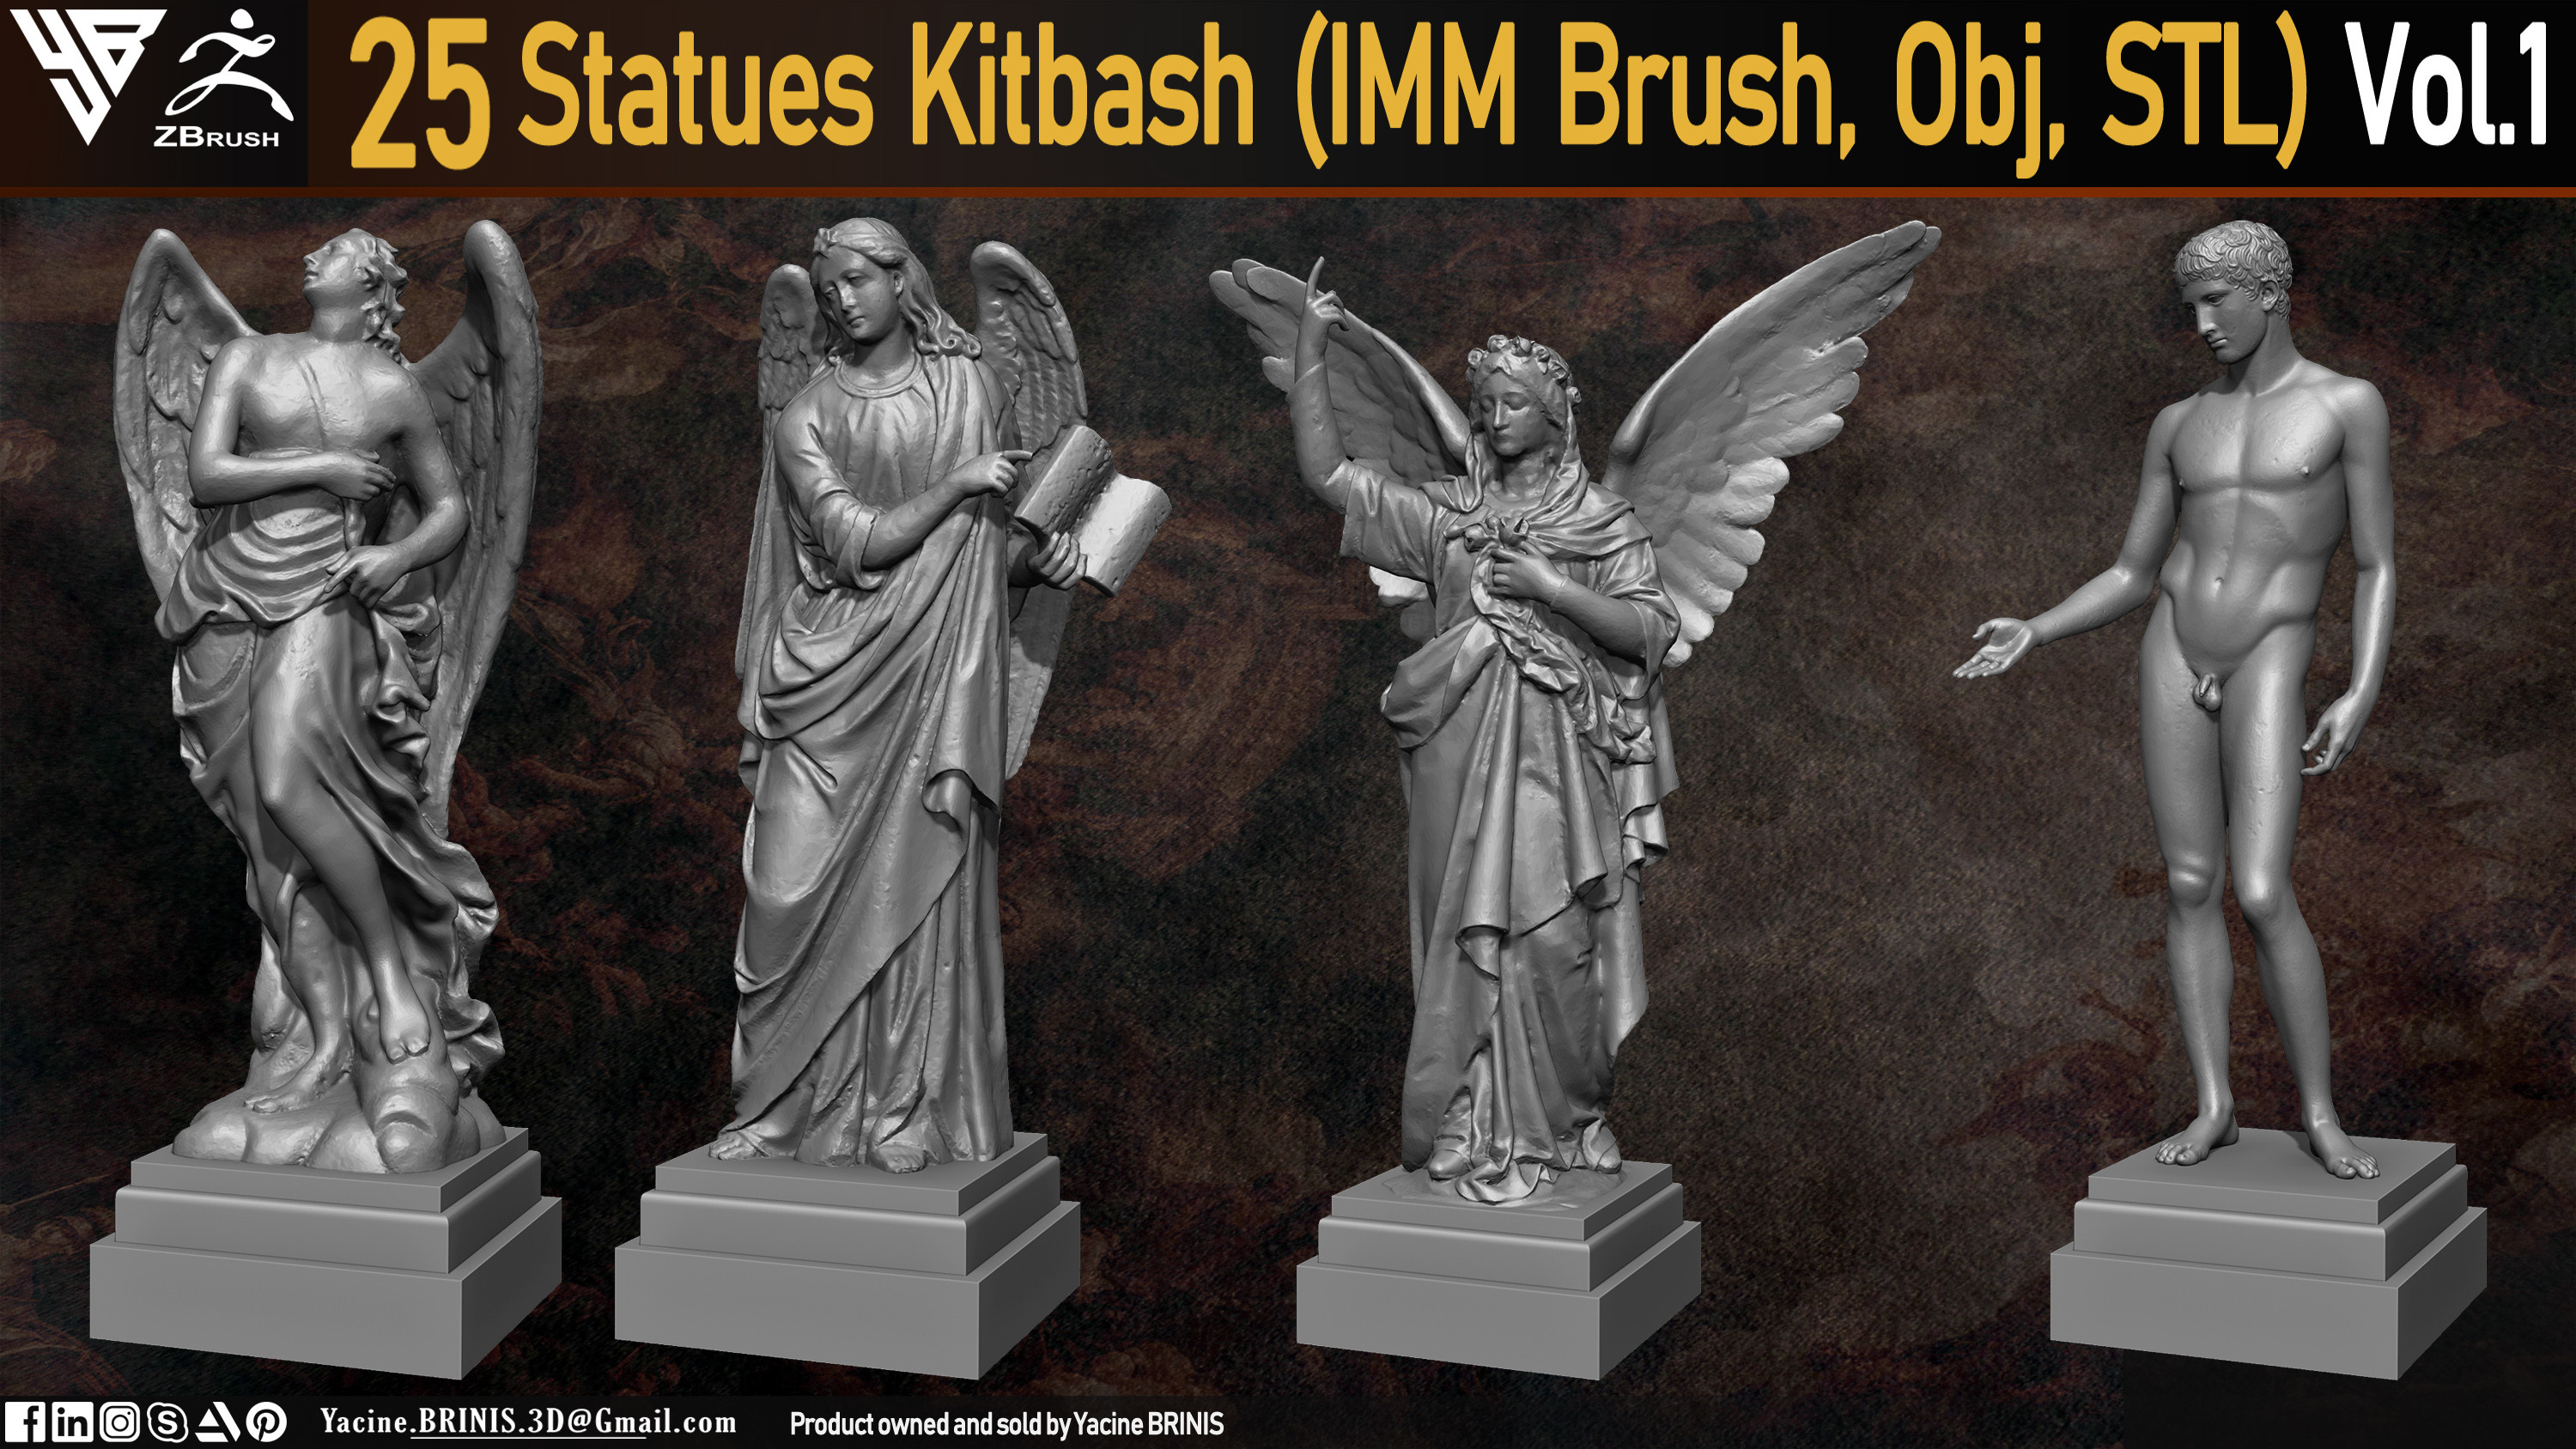 Statues Kitbash by yacine brinis Set 04